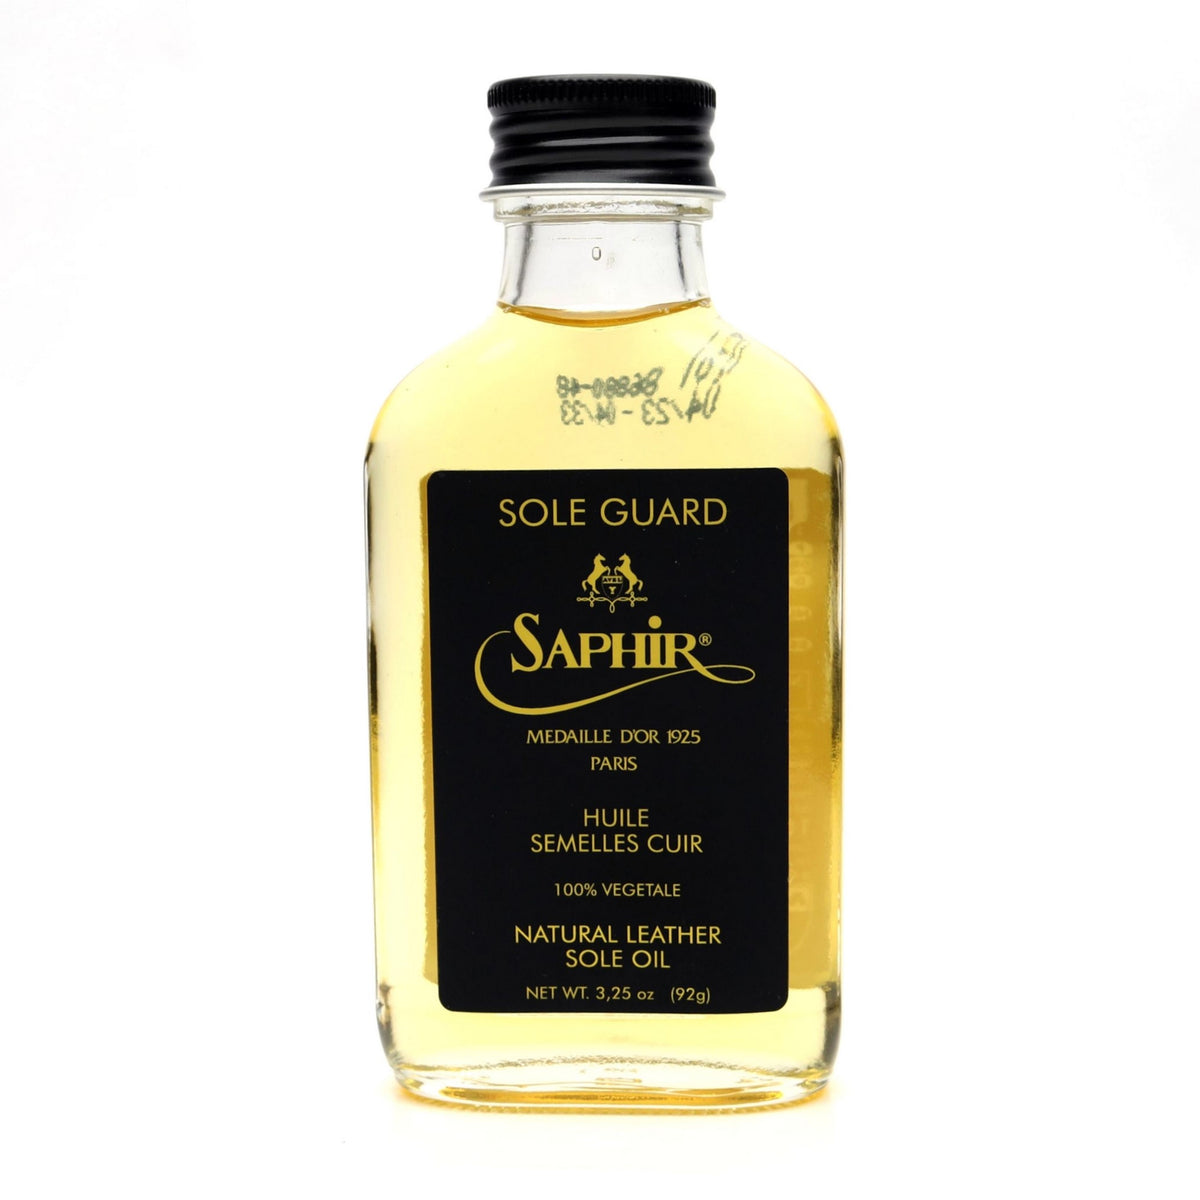 Saphir Sole Guard Oil